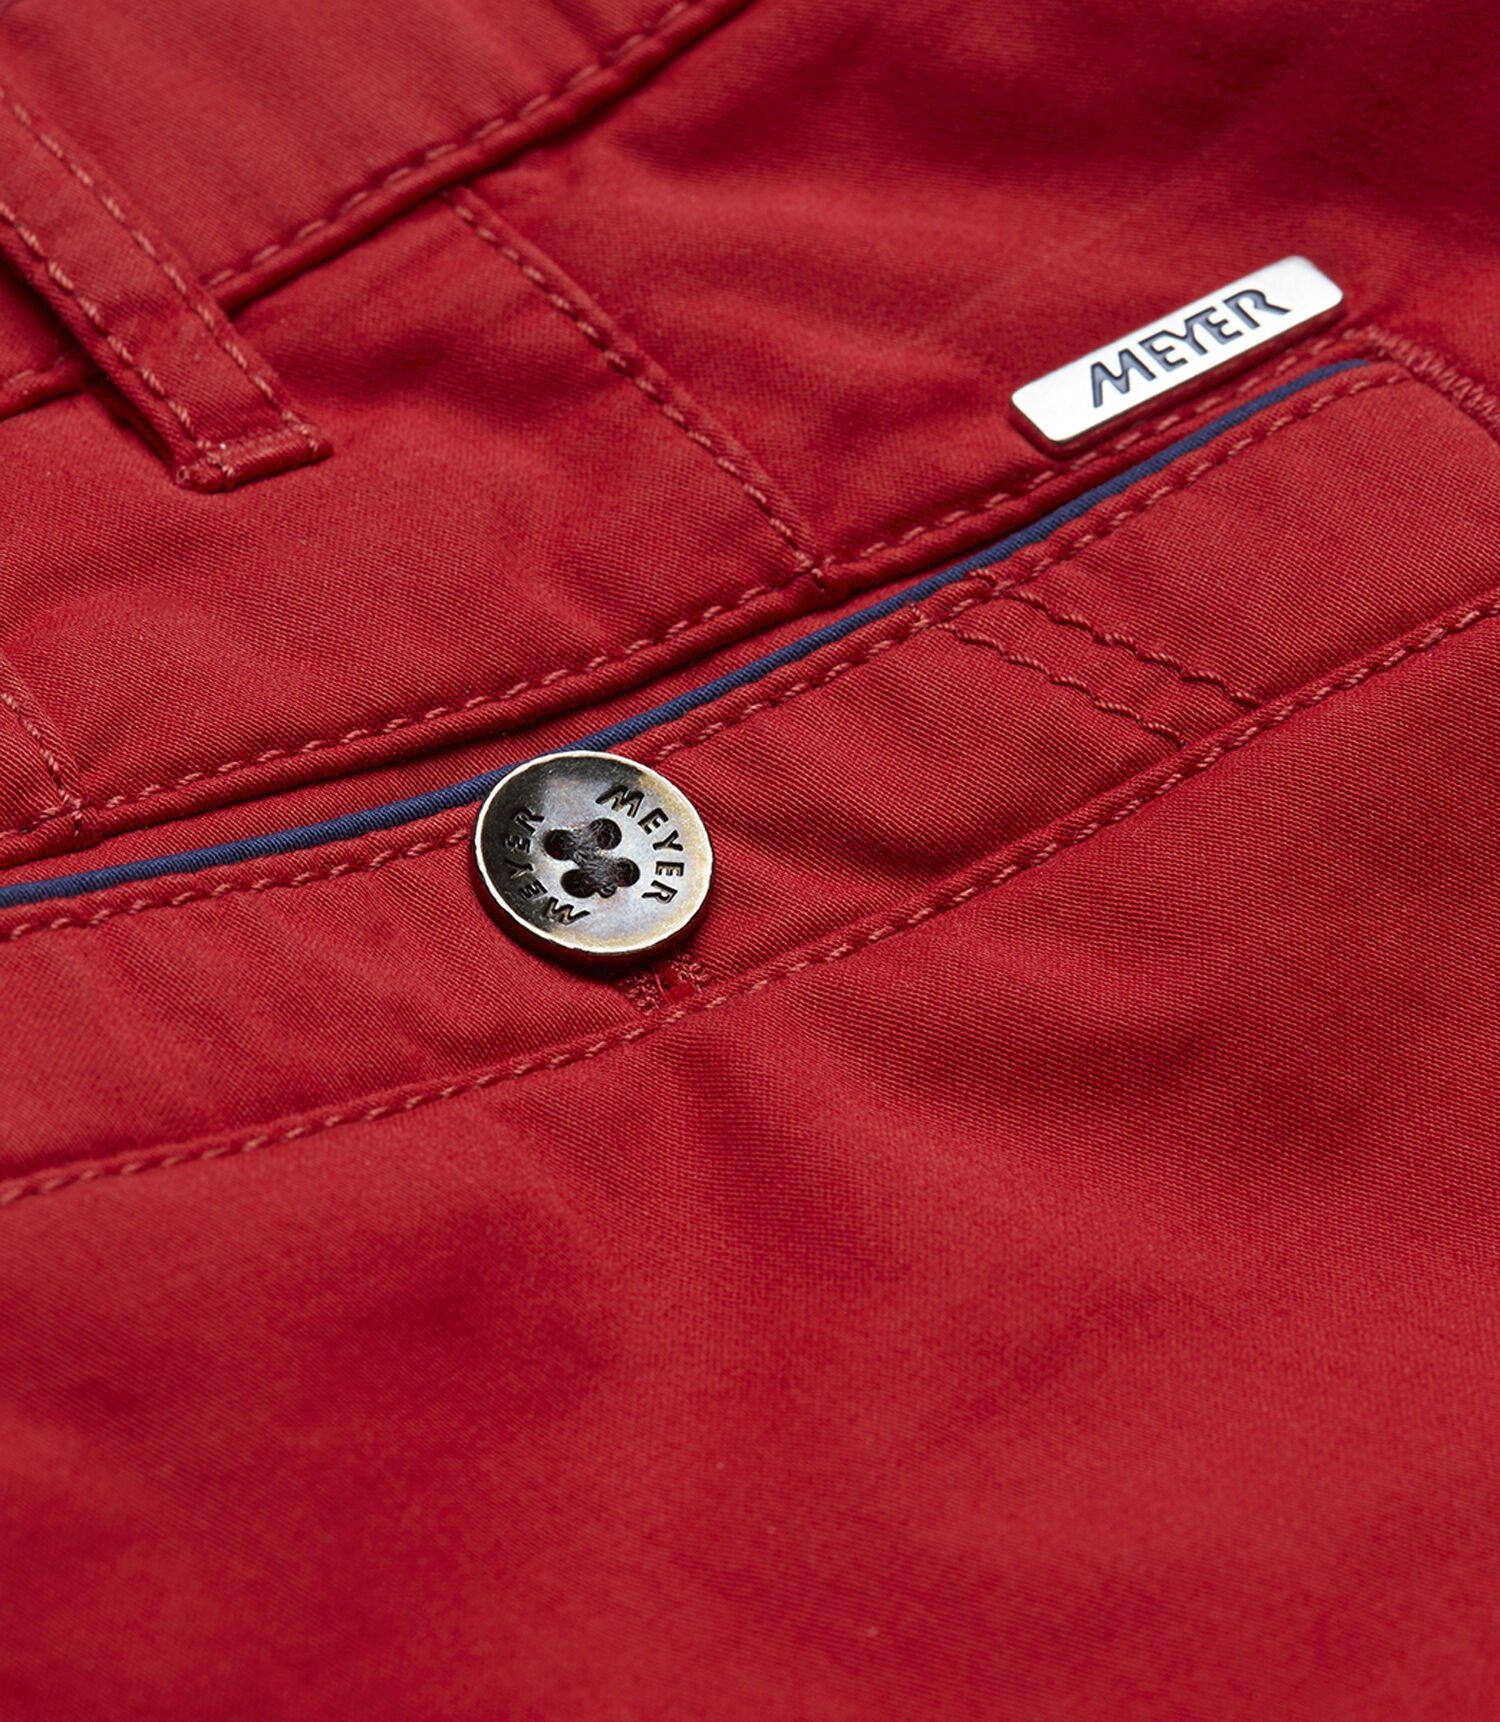 Taschenbeutel MEYER Chino YORK NEW Cotton im Sicherheitstasche linken Modell mit Regular-fit-Jeans hellrot Pima